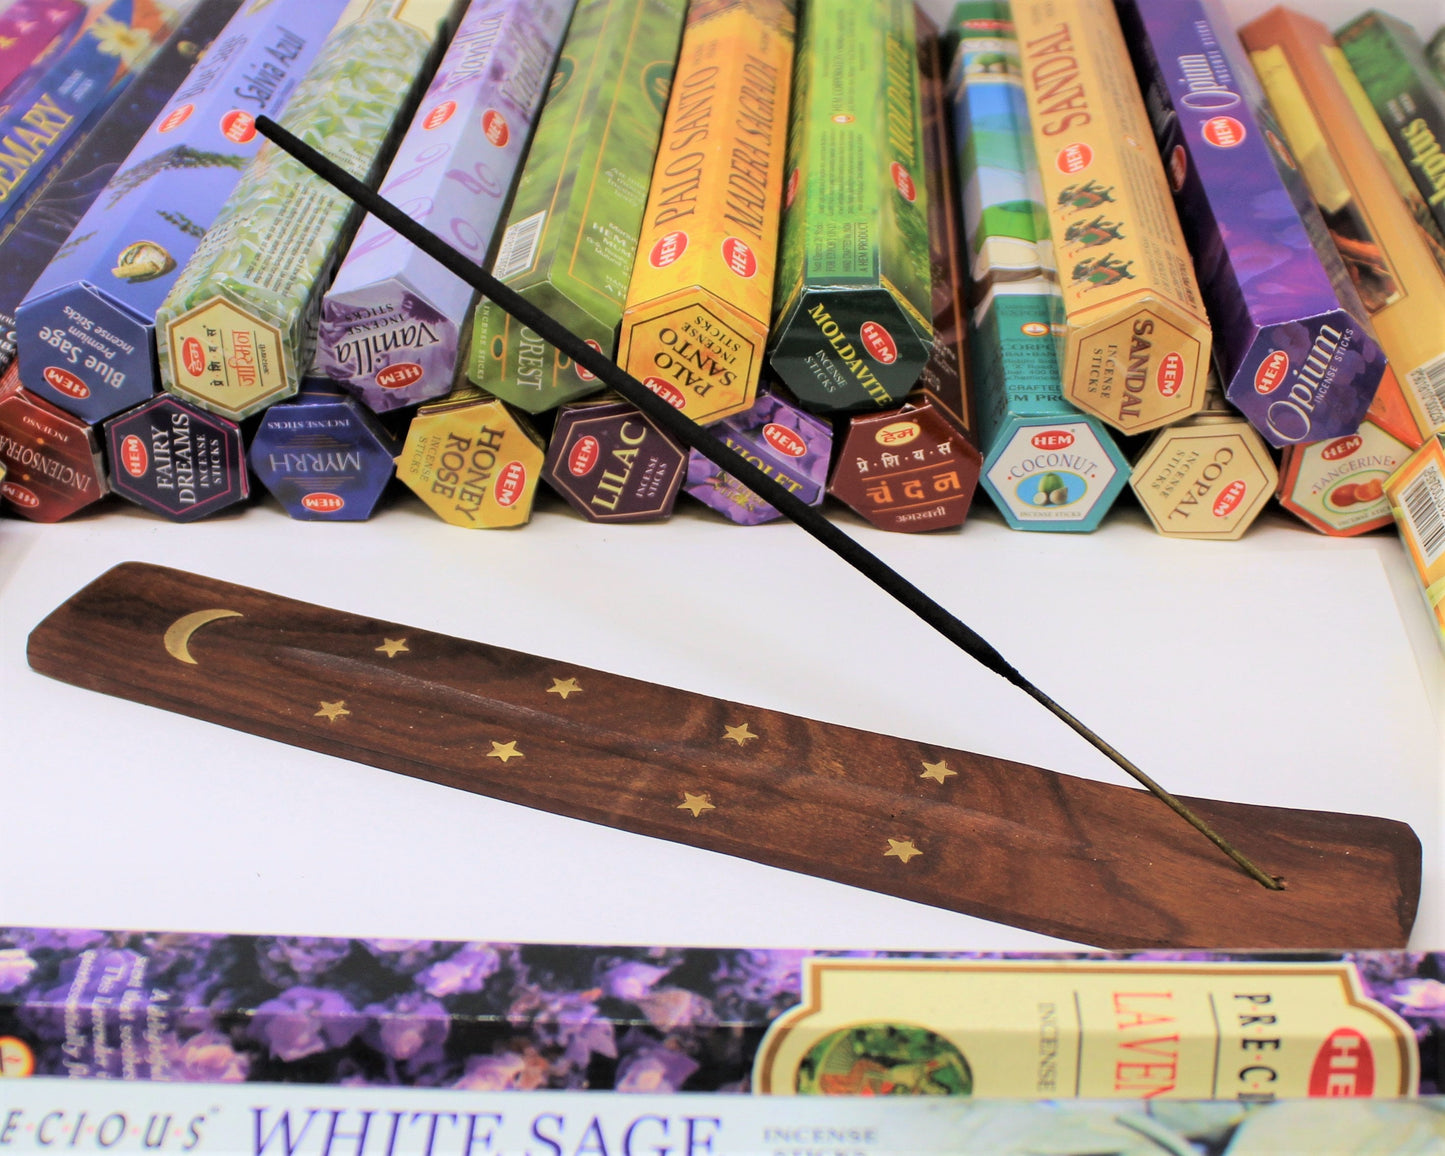 10" Carved Wooden Incense Holder For Stick Incense